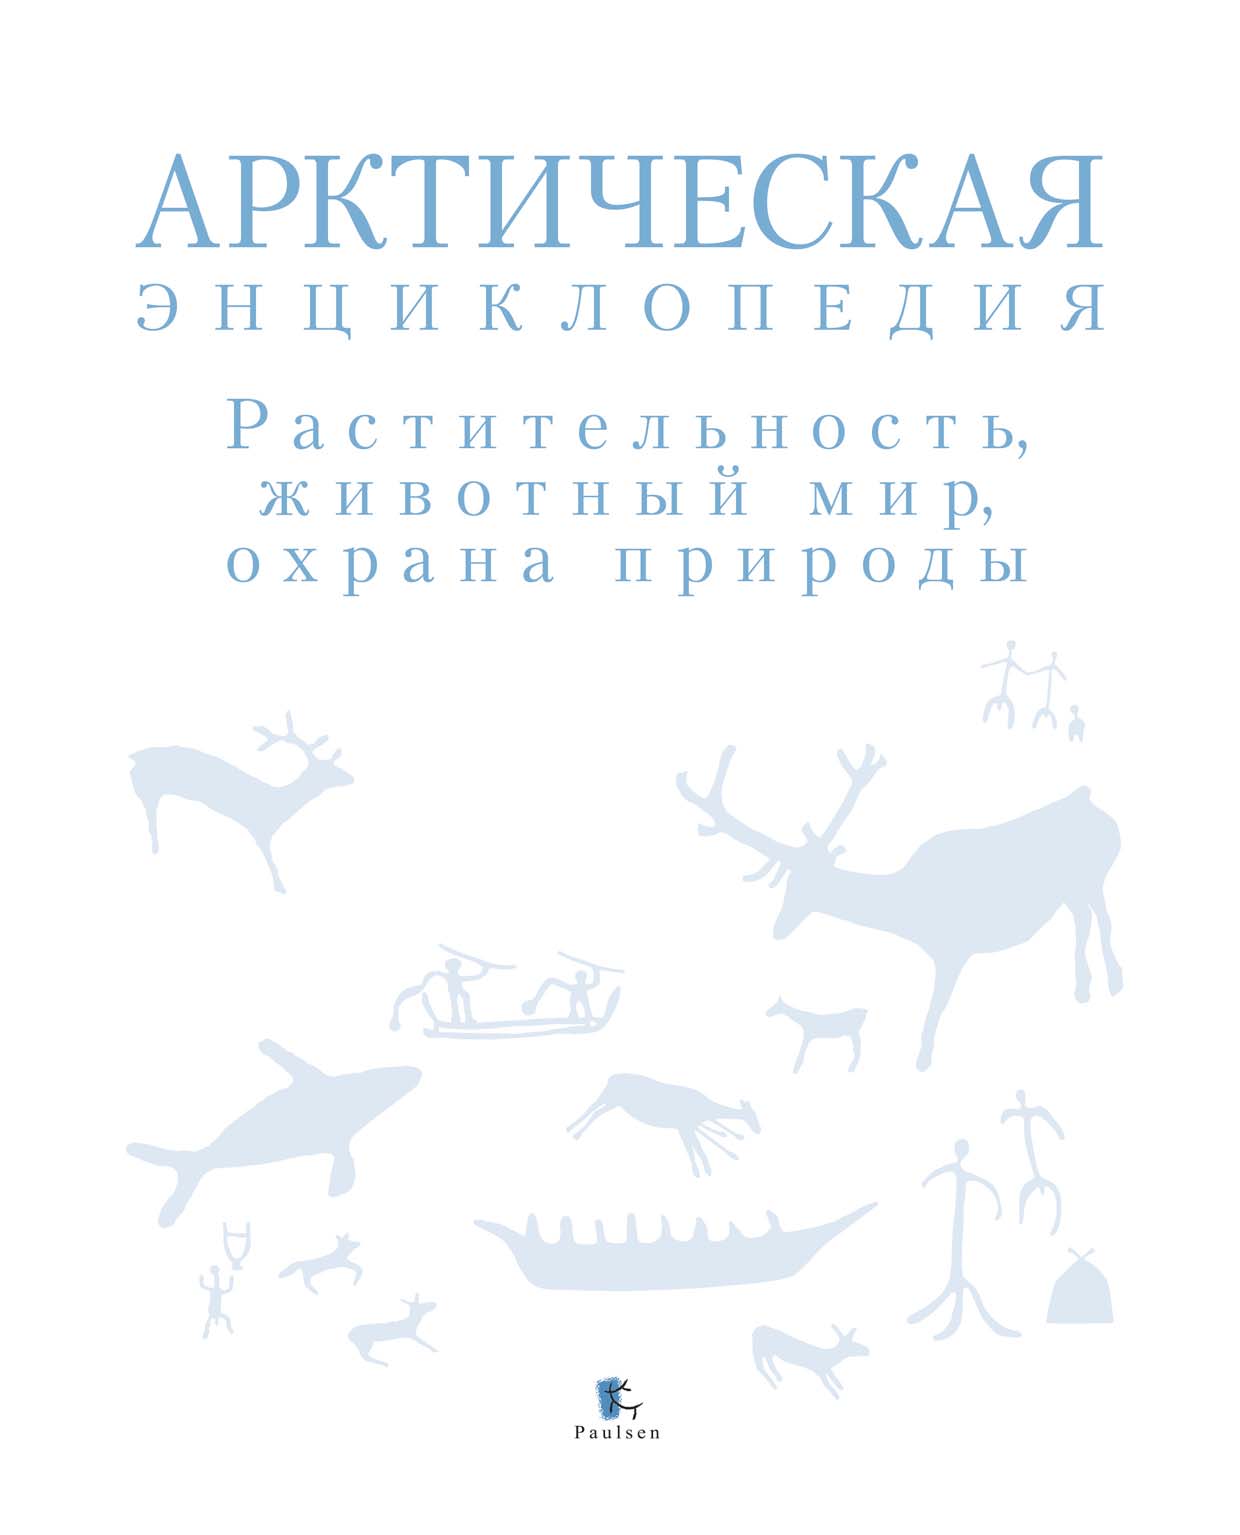 Арктическая энциклопедия. Растительность, животный мир, охрана природы